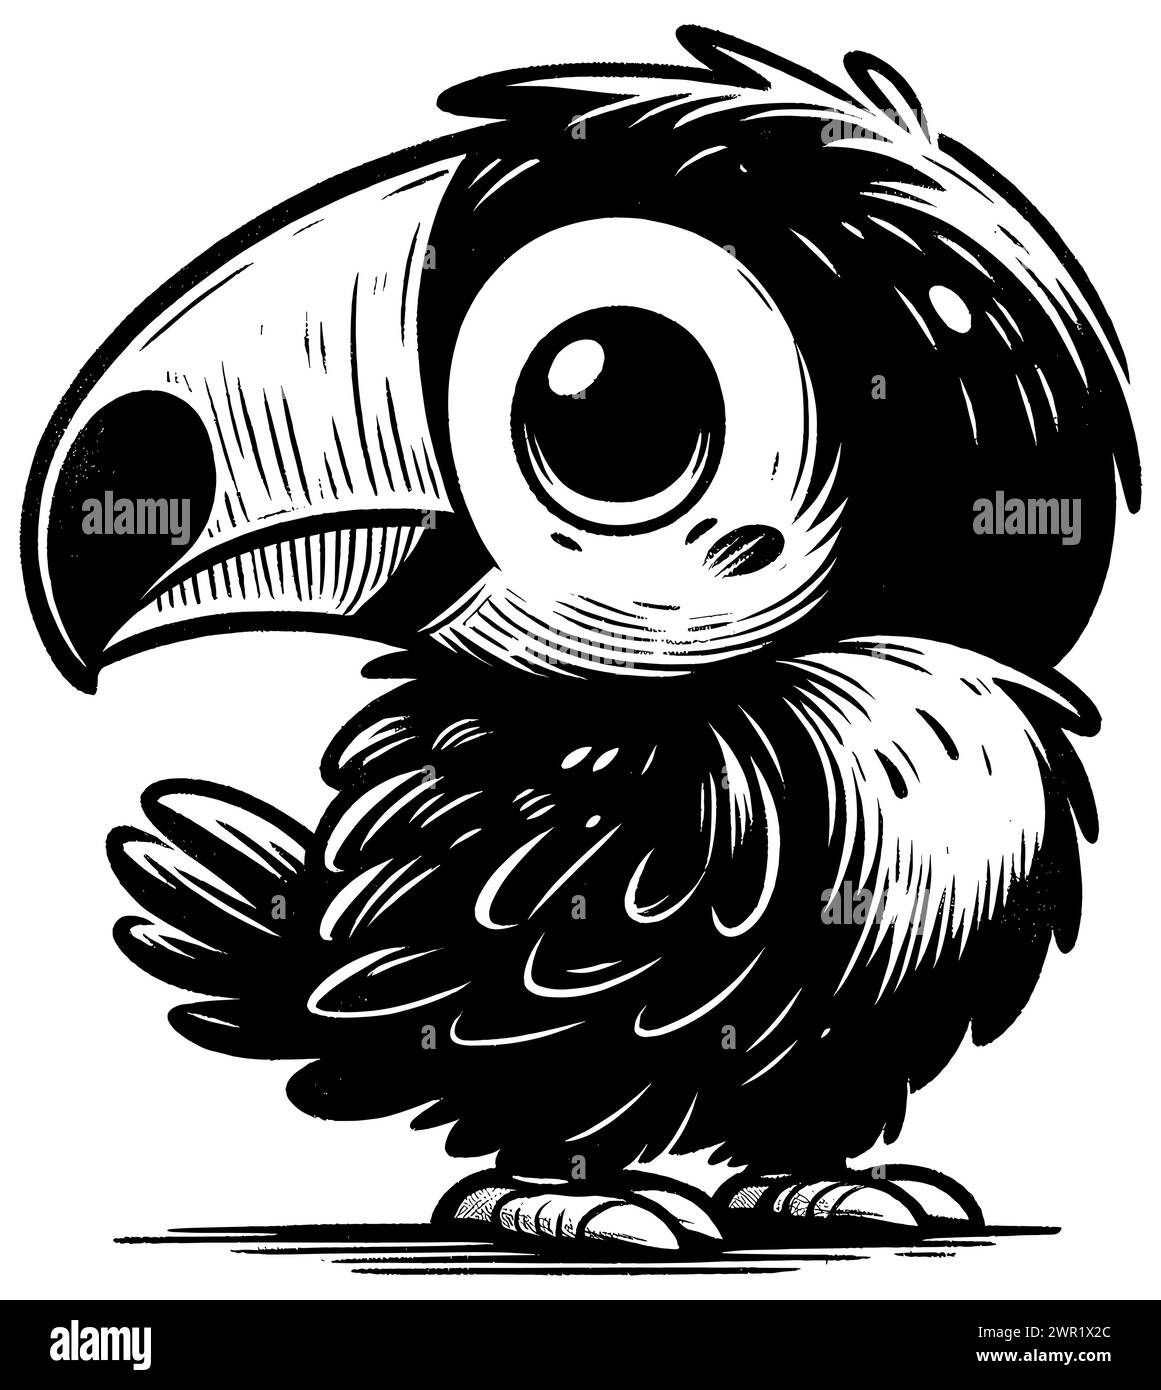 Holzschnitt-Illustration des niedlichen Baby-Tukans auf weißem Hintergrund. Stock Vektor